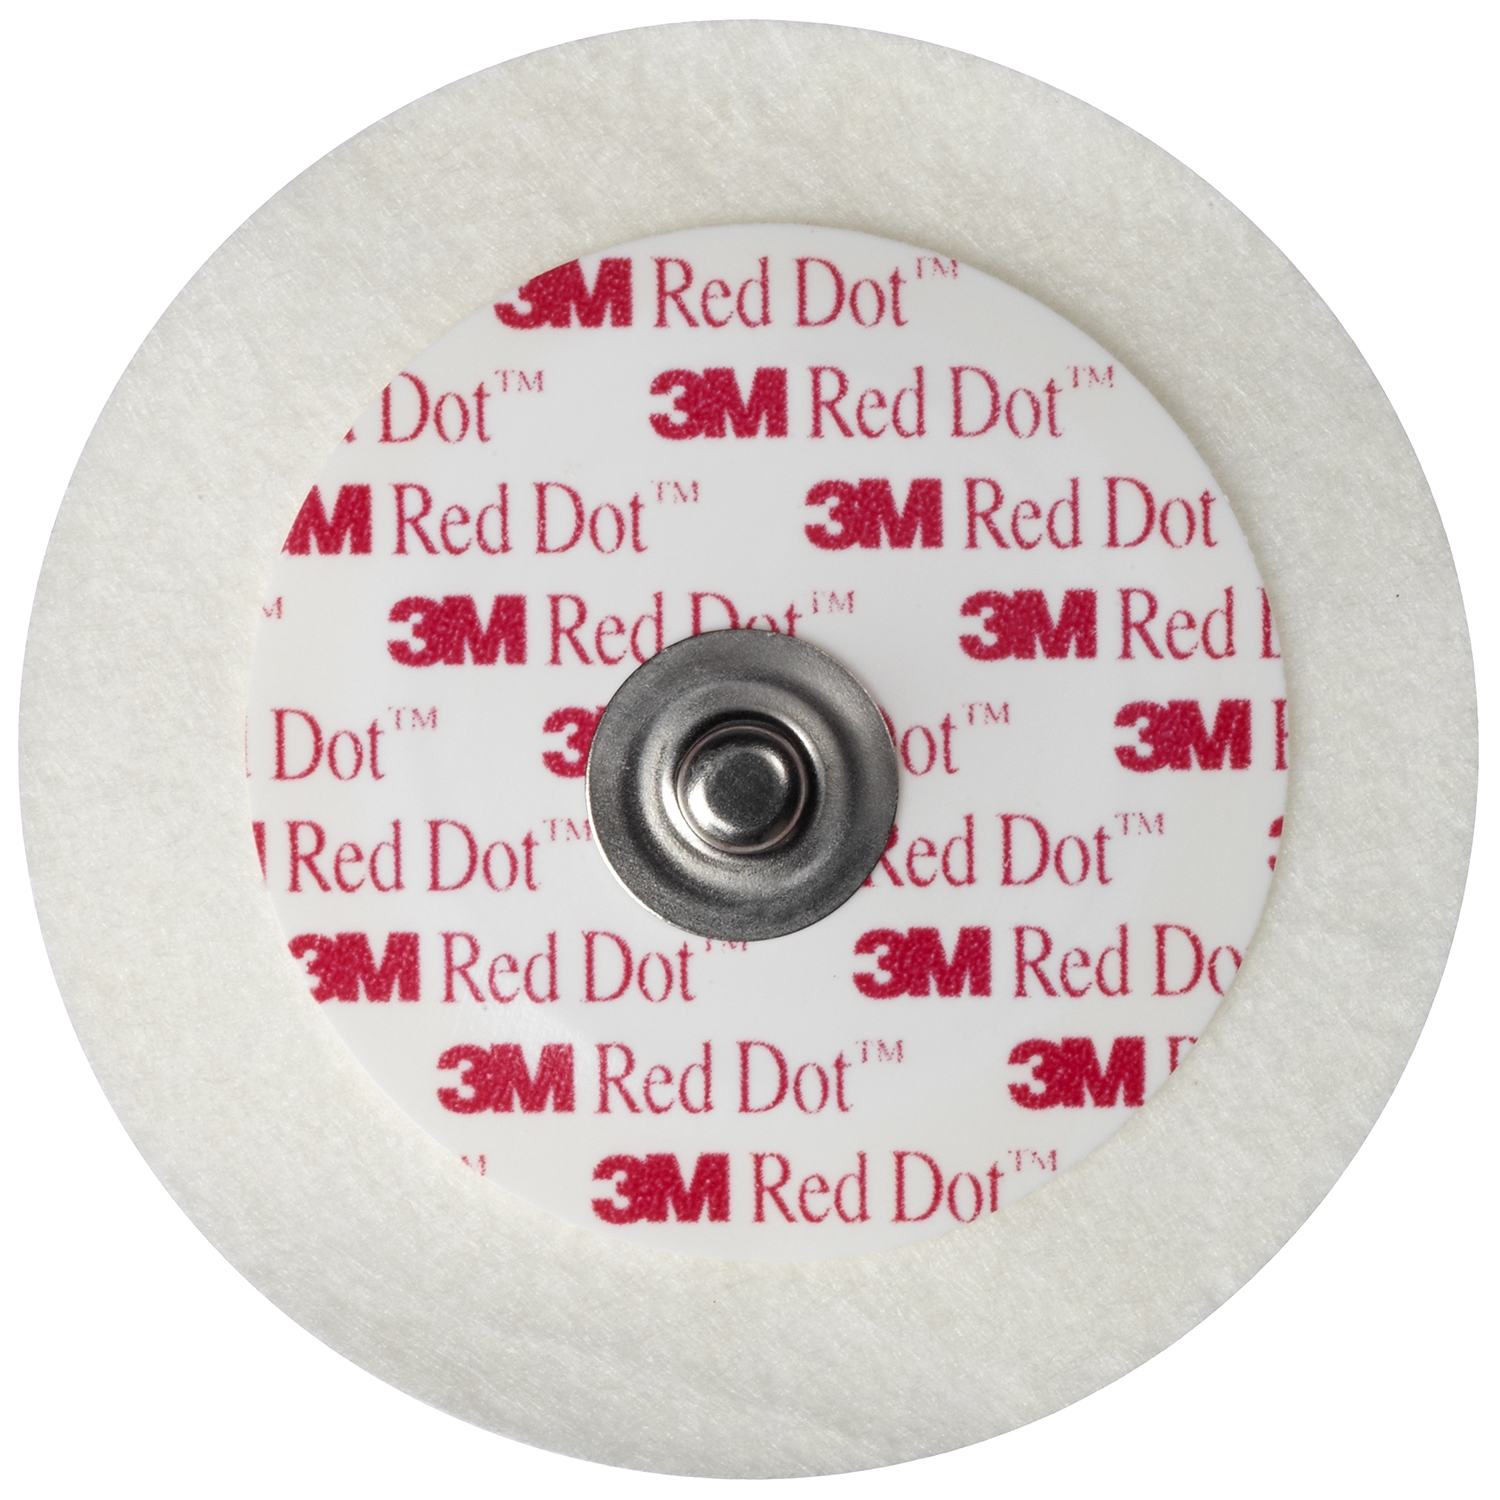 3M Red Dot électrodes pédiatriques (50 pcs)